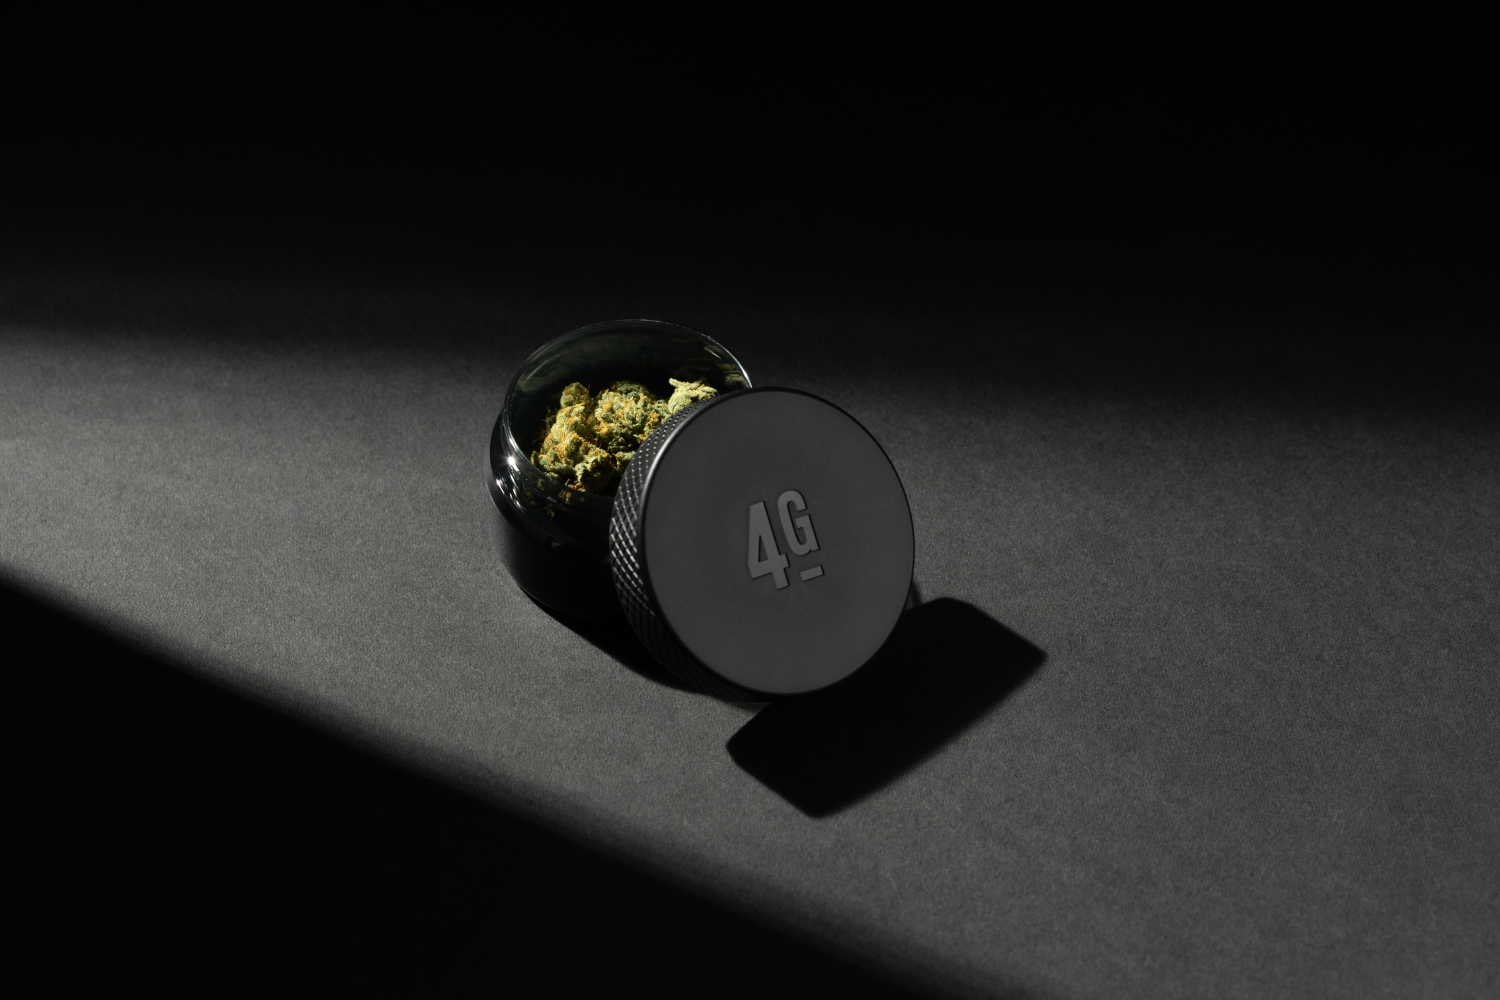 La fleur 4G de Monogram, la marque de cannabis de Jay-Z